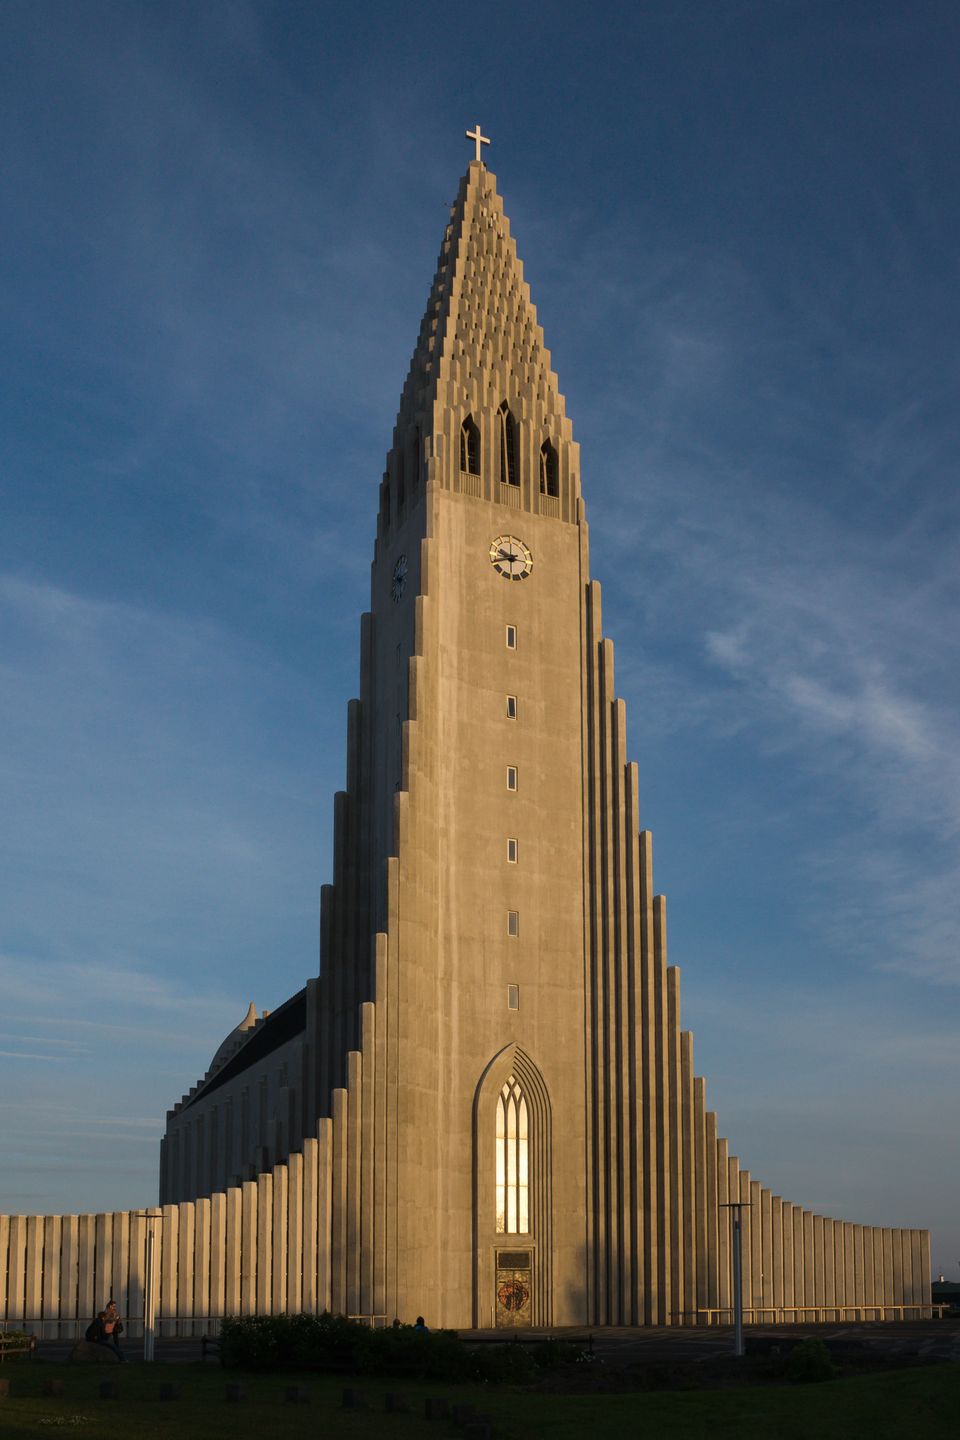 The Church of Hallgrímur